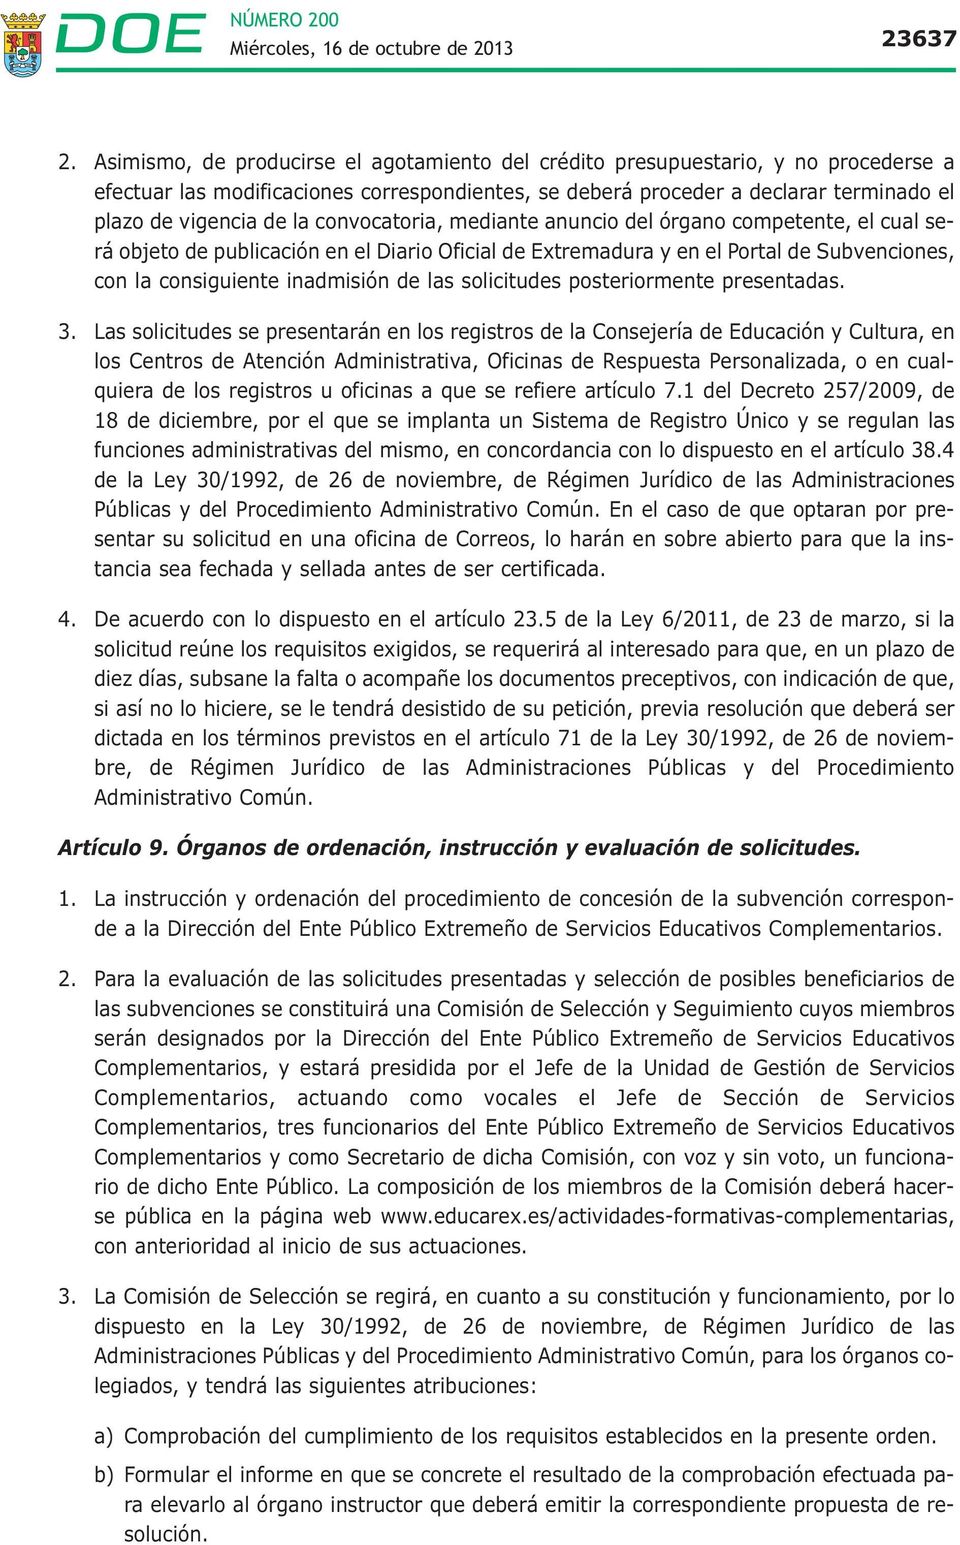 convocatoria, mediante anuncio del órgano competente, el cual será objeto de publicación en el Diario Oficial de Extremadura y en el Portal de Subvenciones, con la consiguiente inadmisión de las